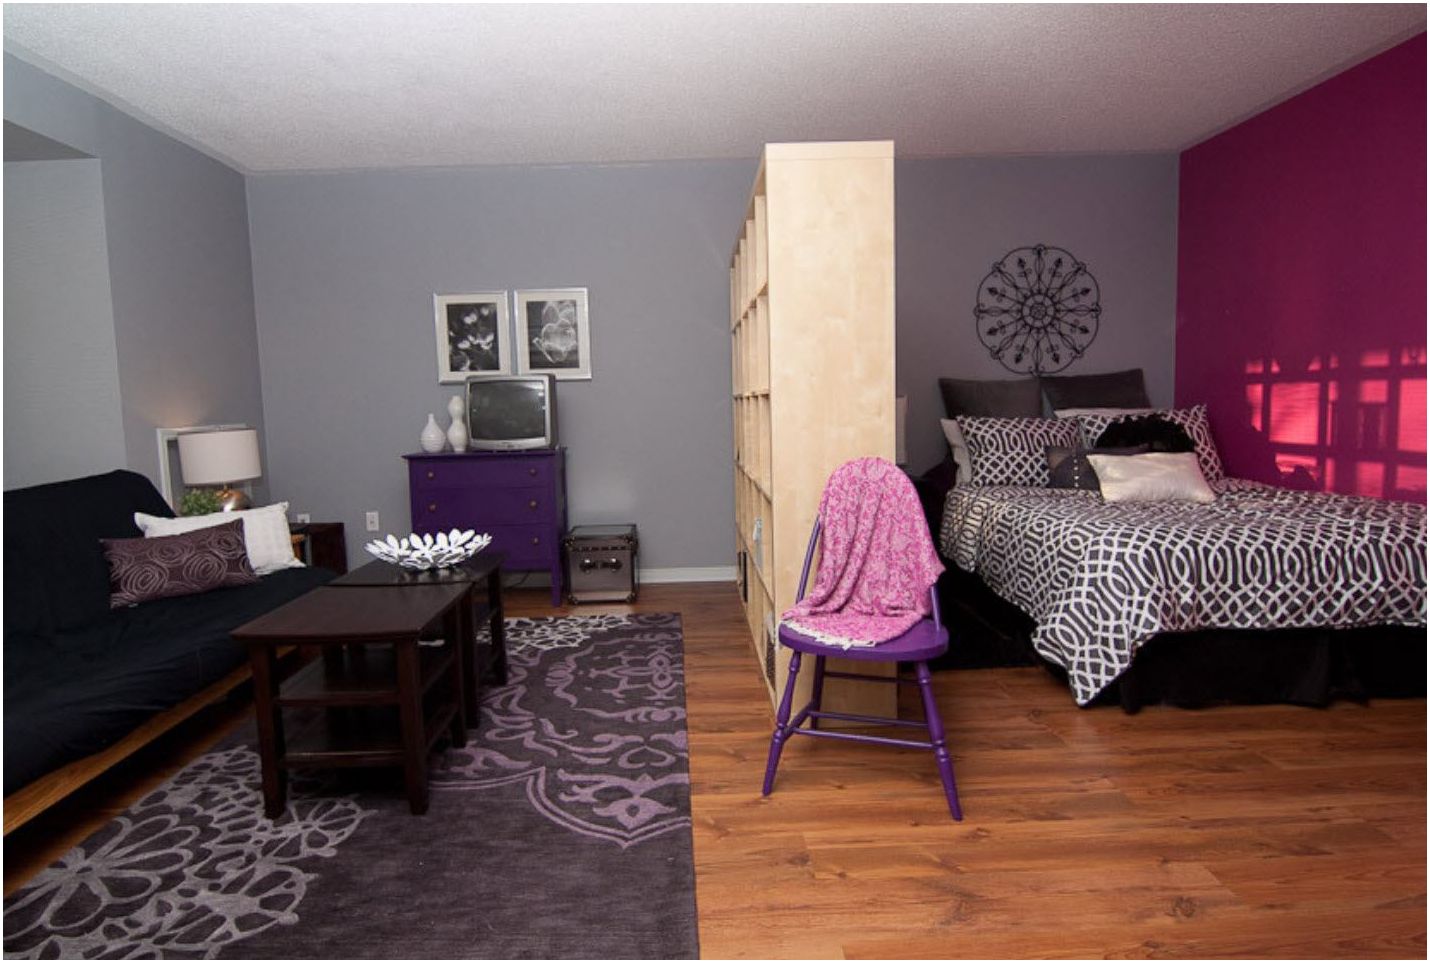 Úspešné príklady kombinovania spálne a obývacej izby v jednej miestnosti